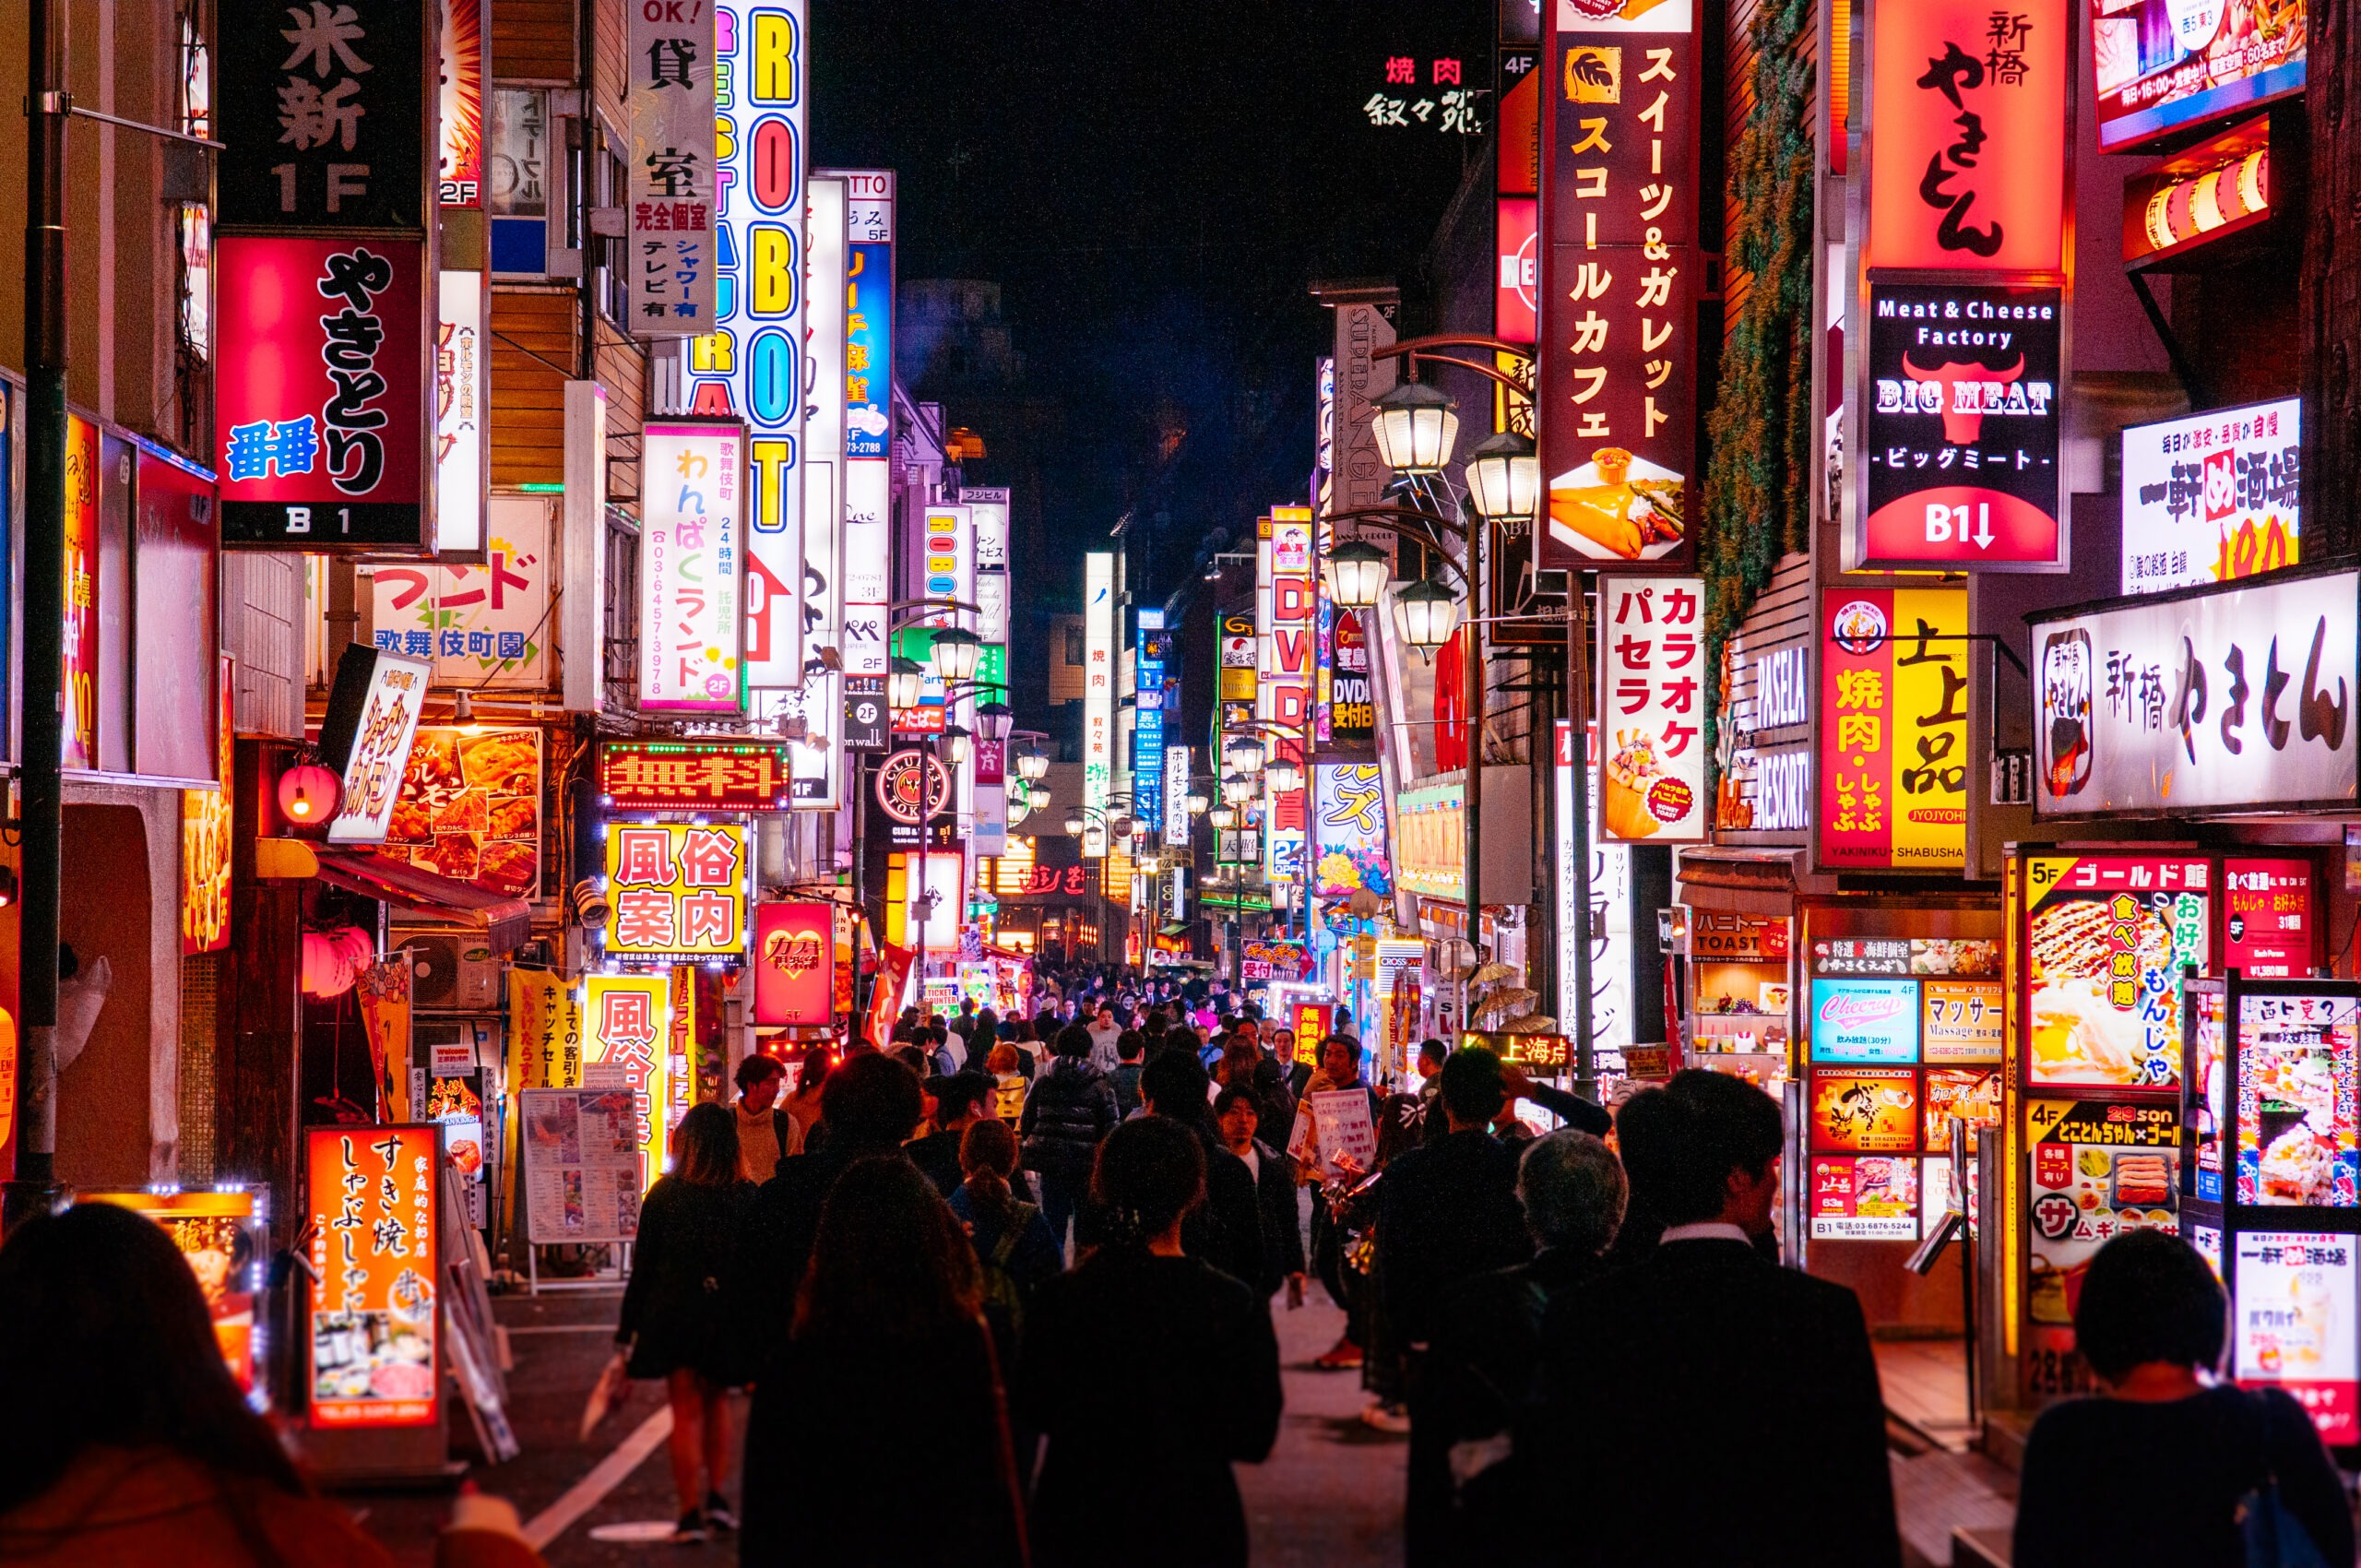 Downtown Tokyo nightlife